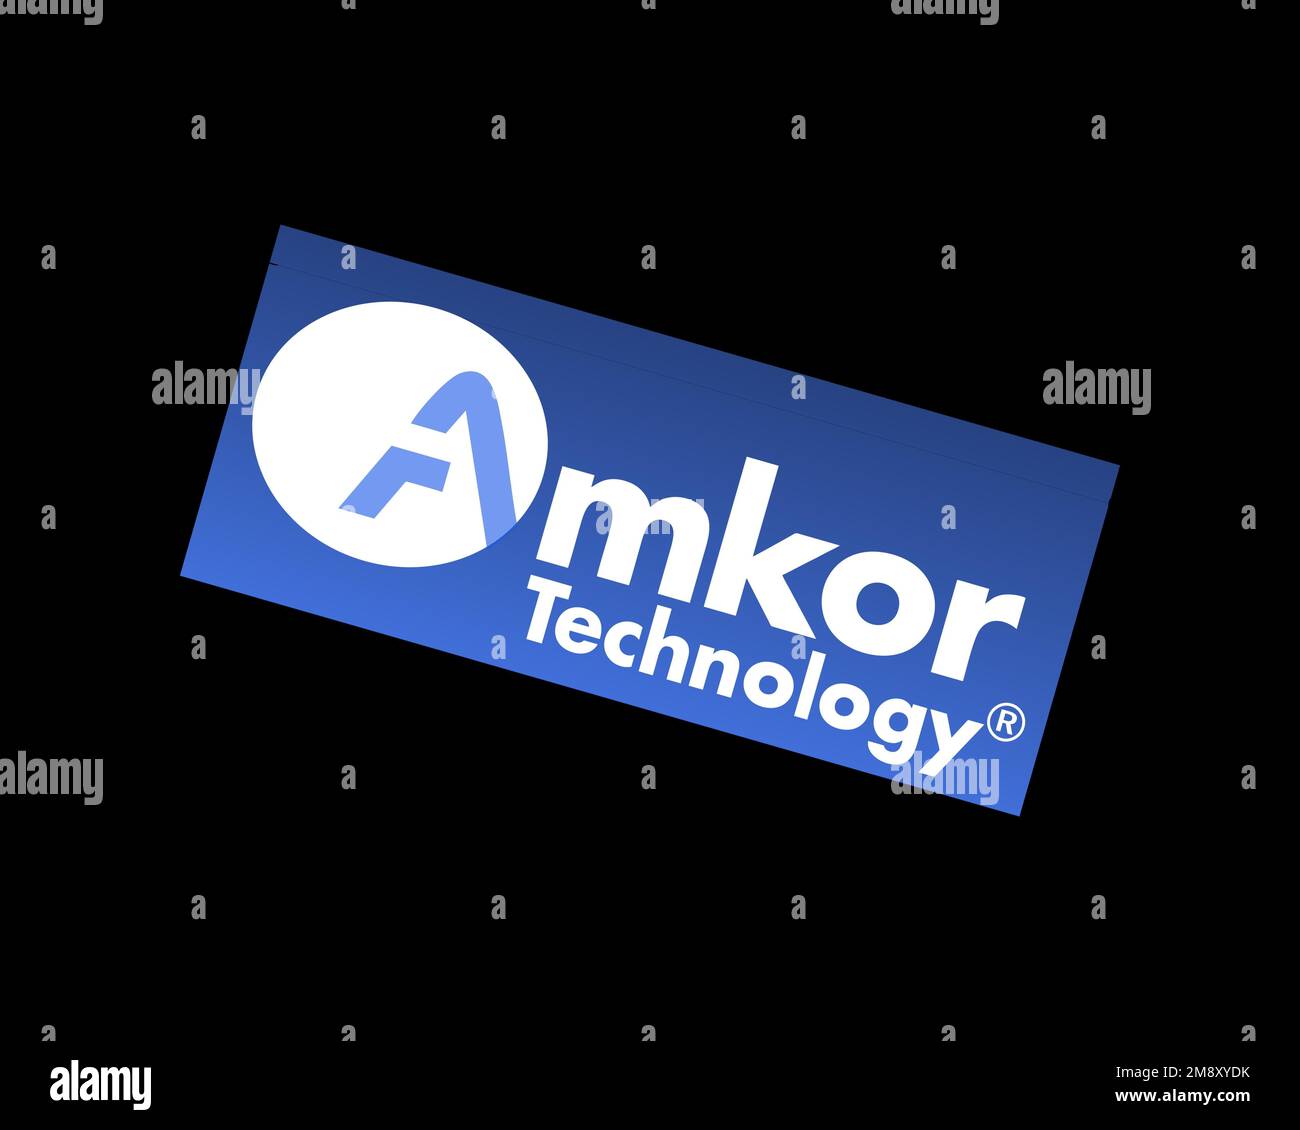 Amkor Technology, rotated logo, black background B Stock Photo - Alamy